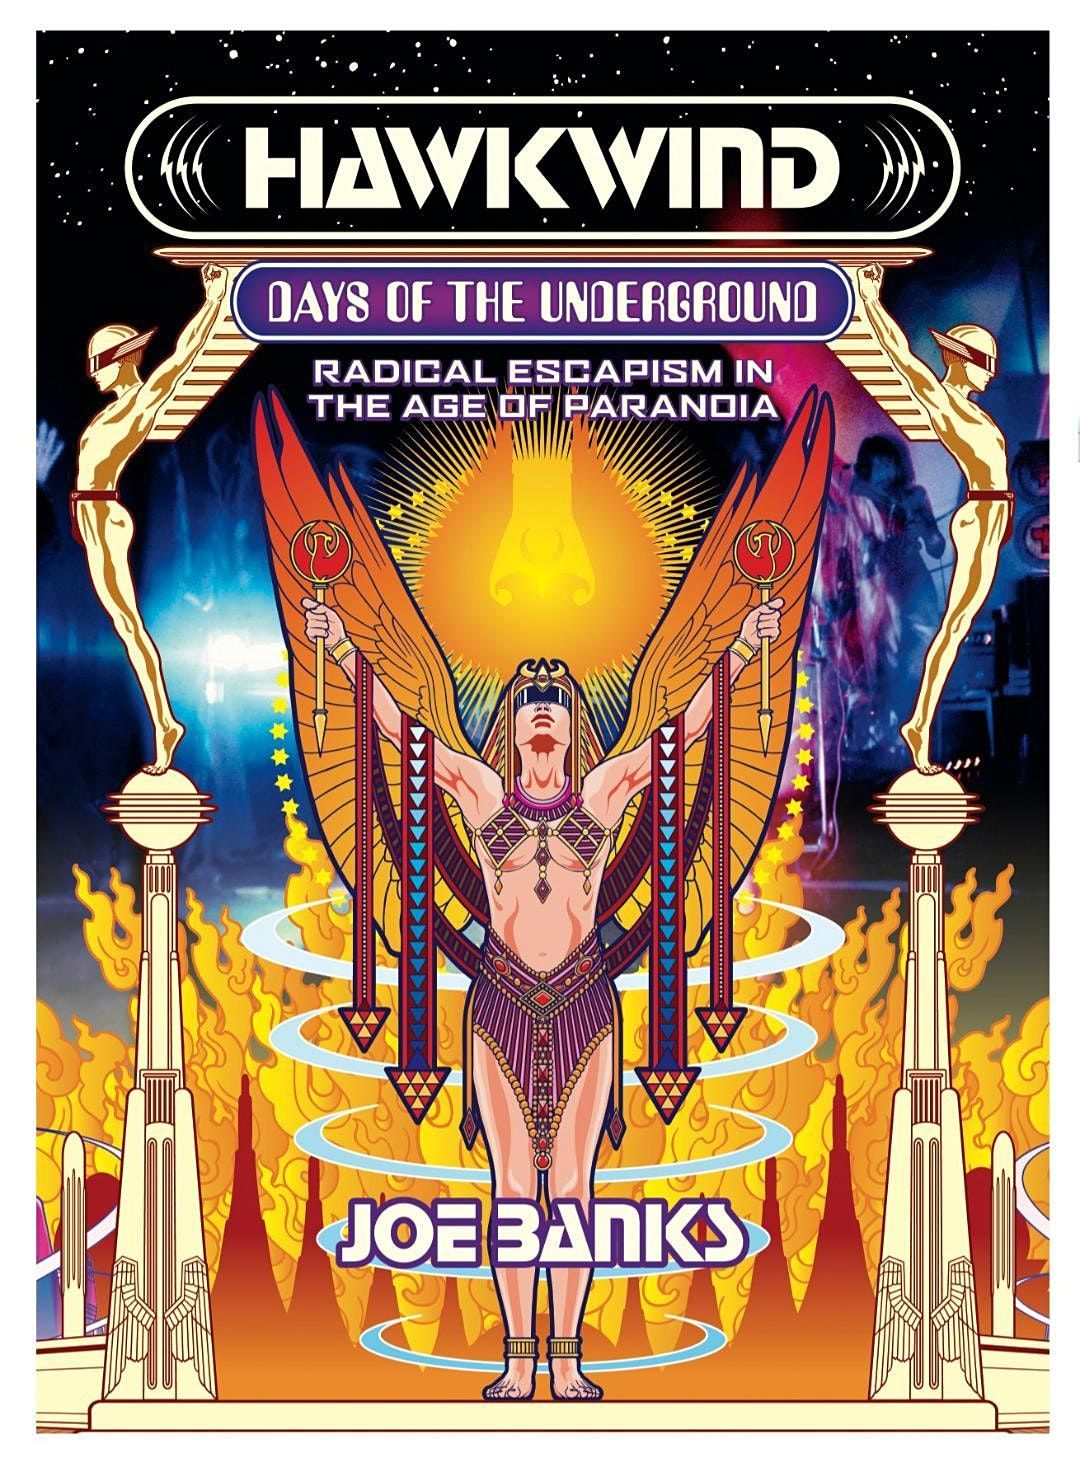 HAWKWIND: Days of the Underground - author Joe Banks in conversation